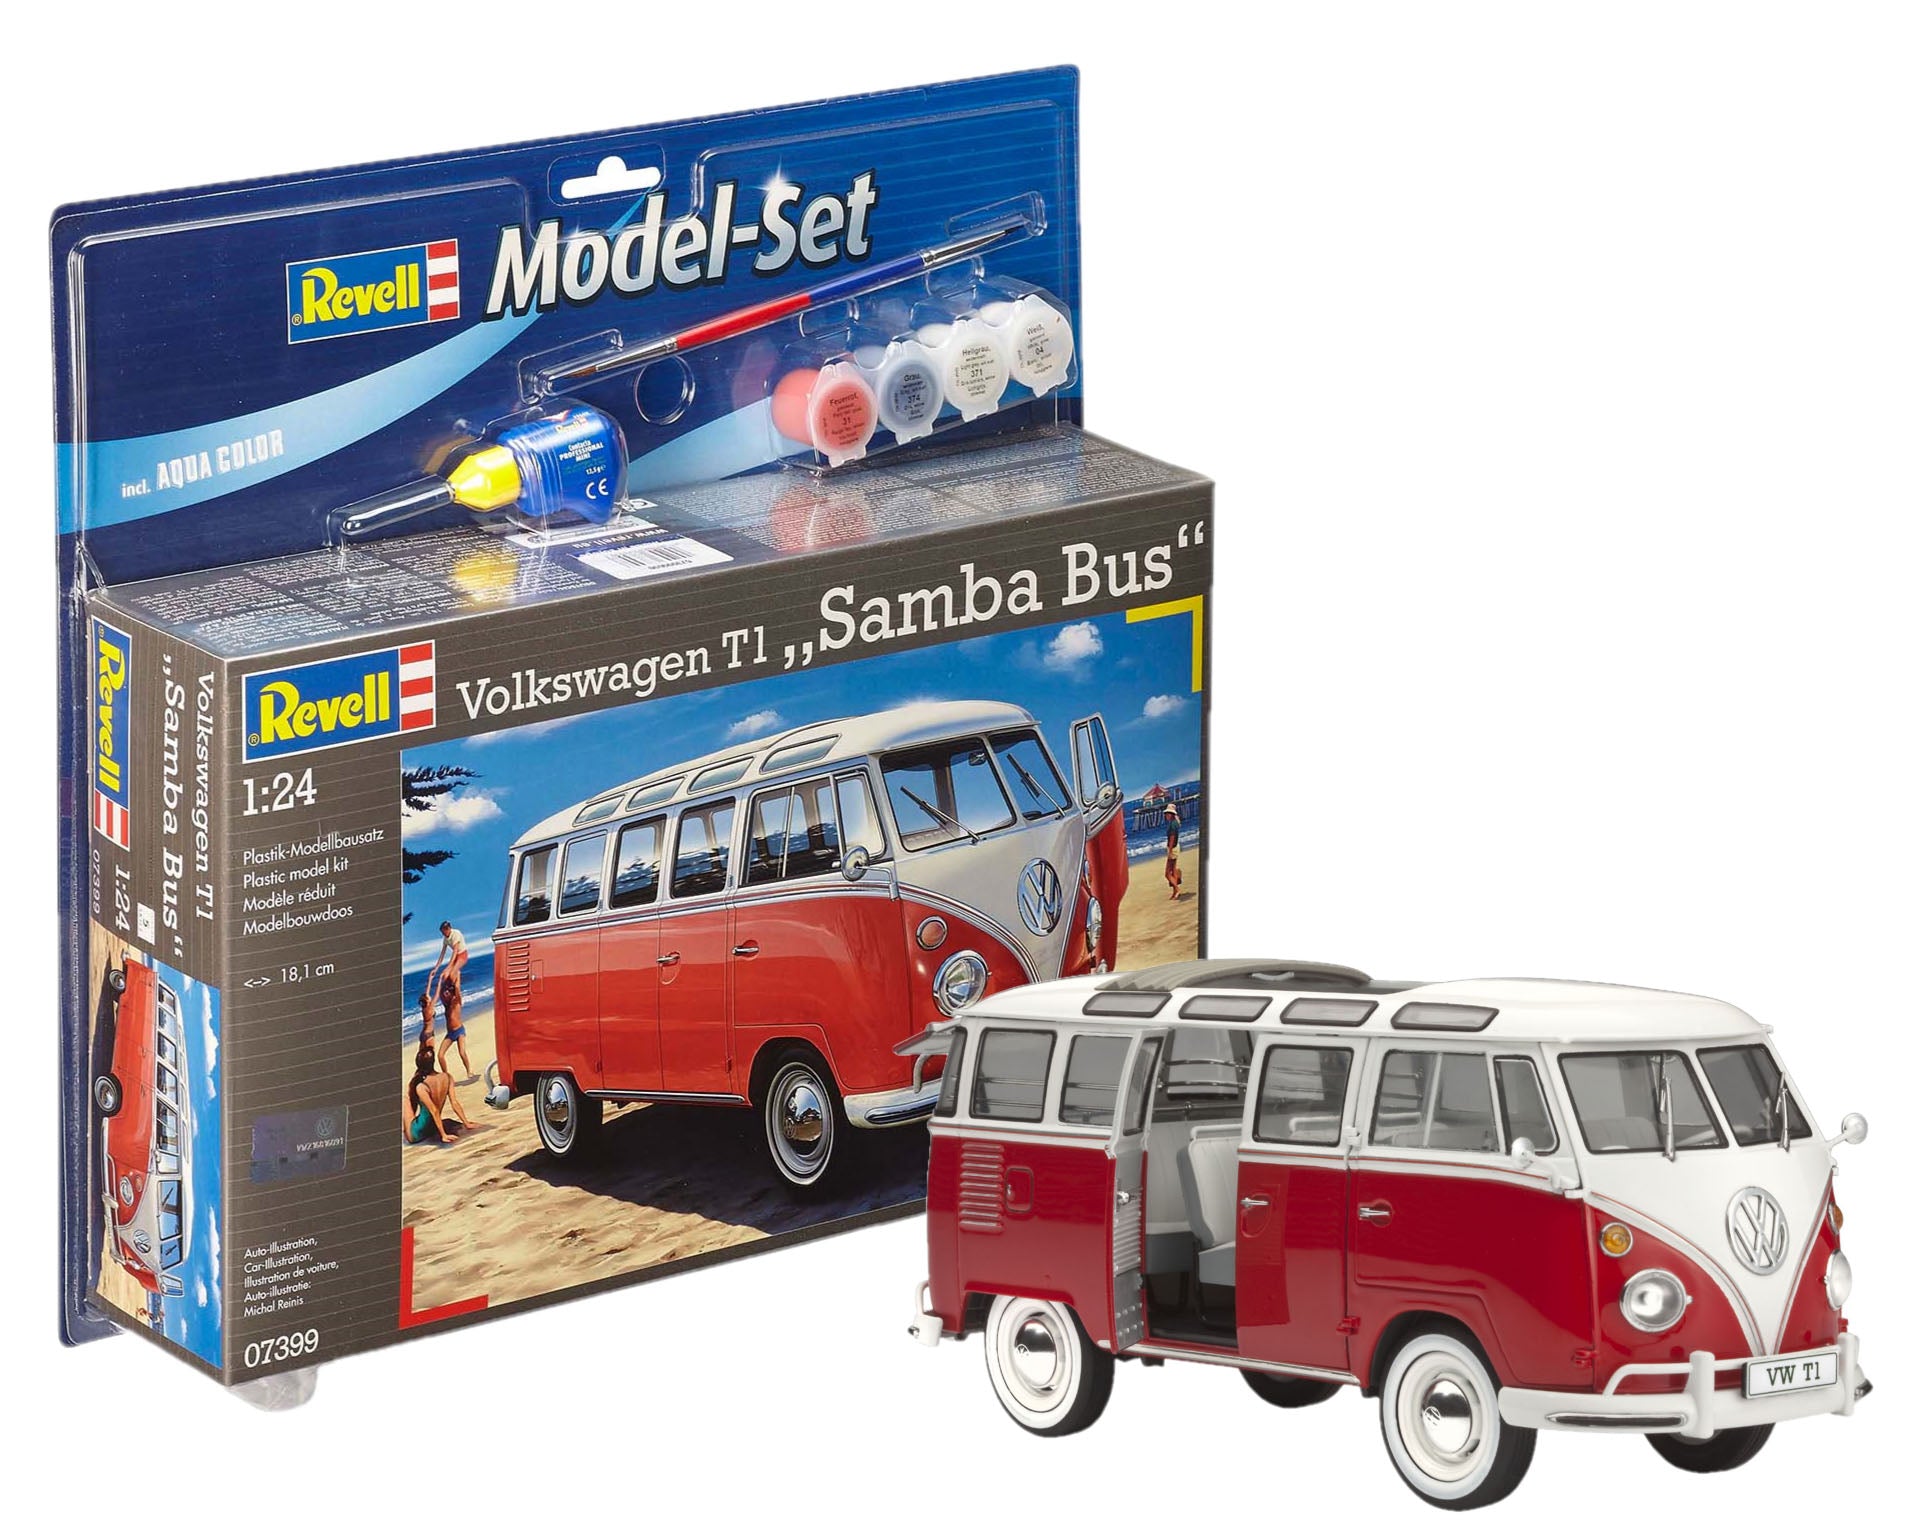 Car Model Kit Revell Model Set Volkswagen T1 Samba Bus 1:24